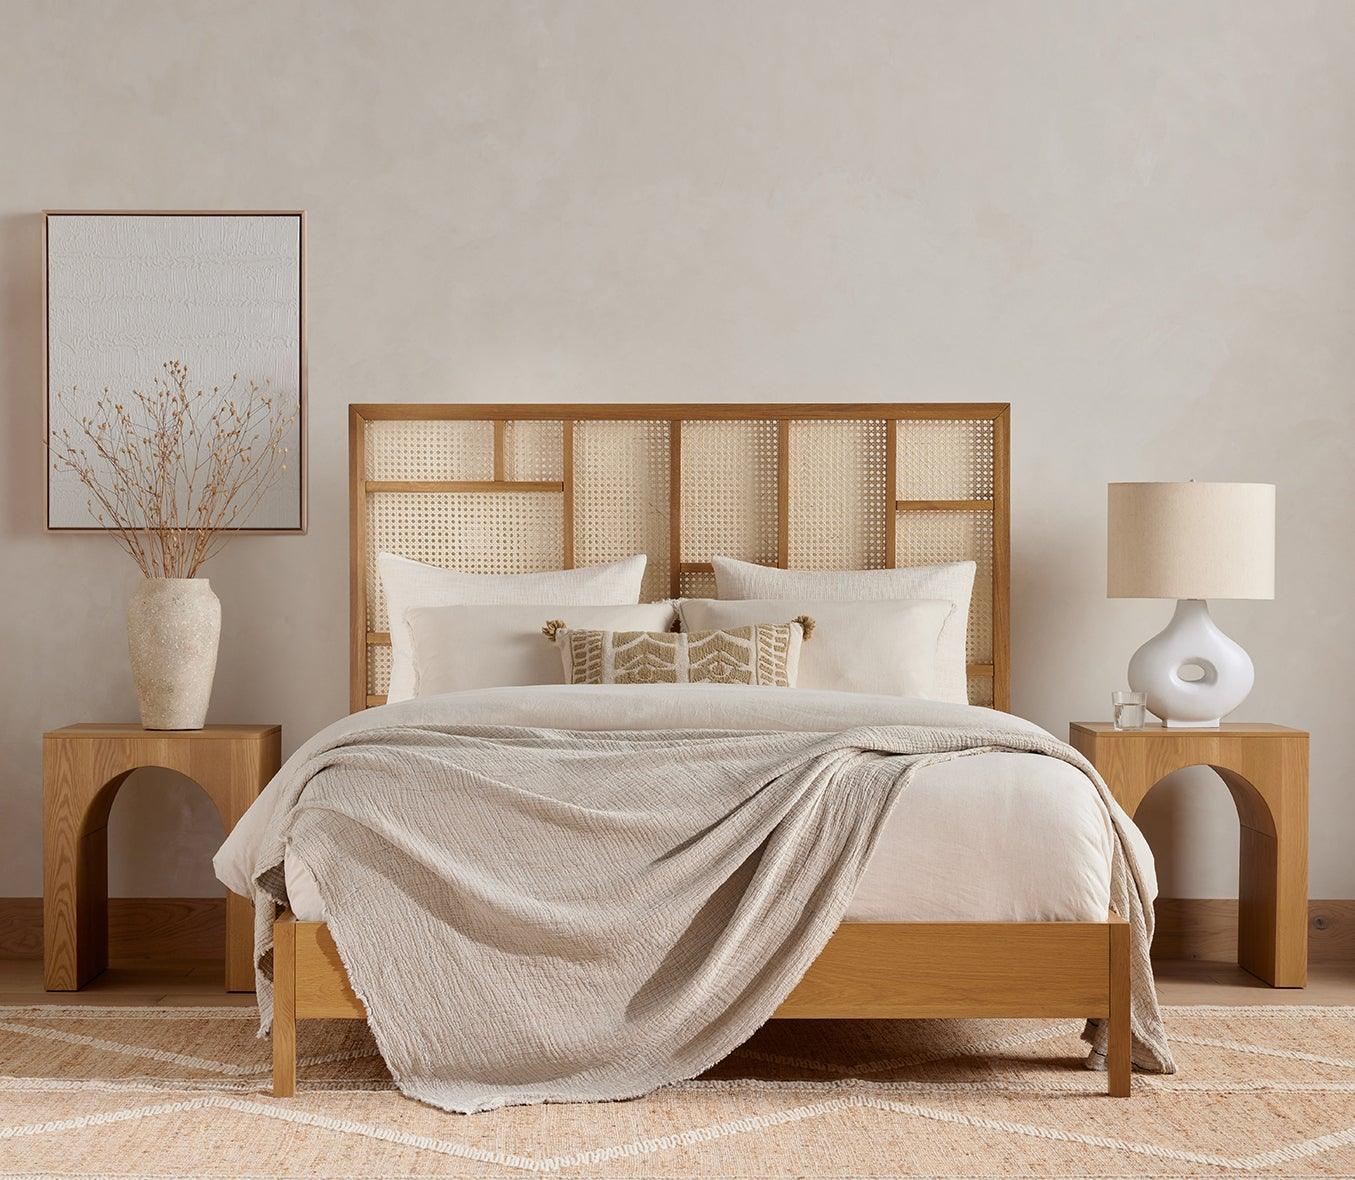 JUNE NATURAL OAK BED - Reimagine Designs - bed, new